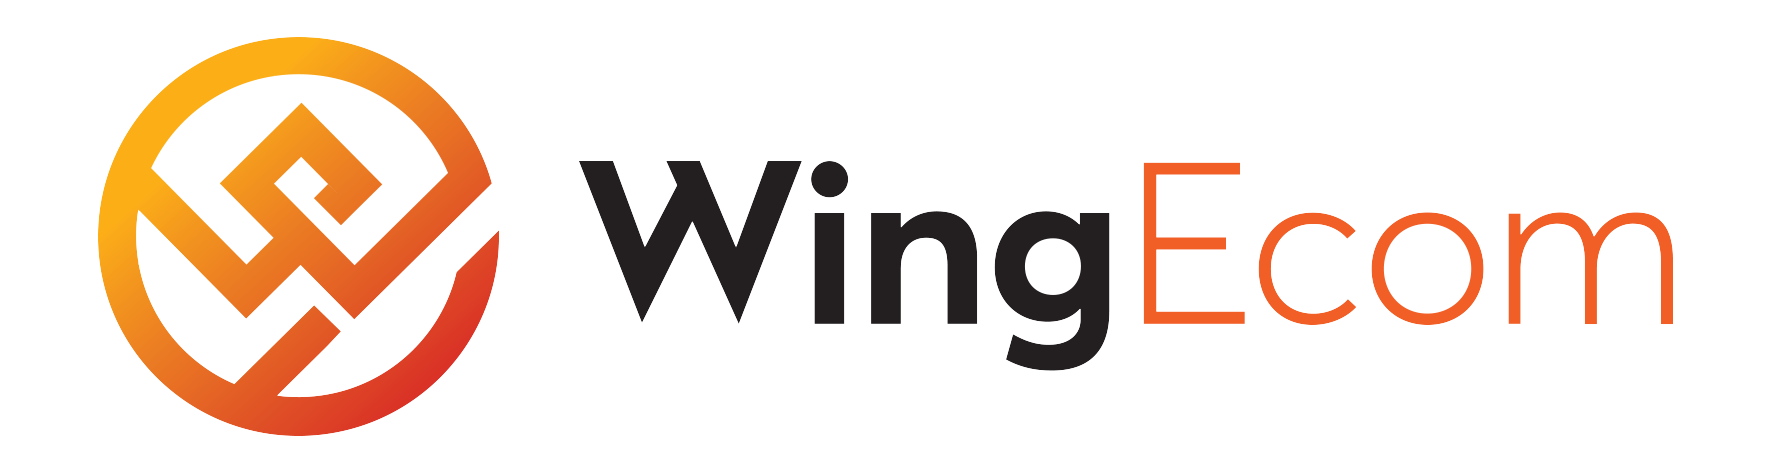 Wingecom – Cung Cấp Giải Pháp Thương Mại Điện Tử